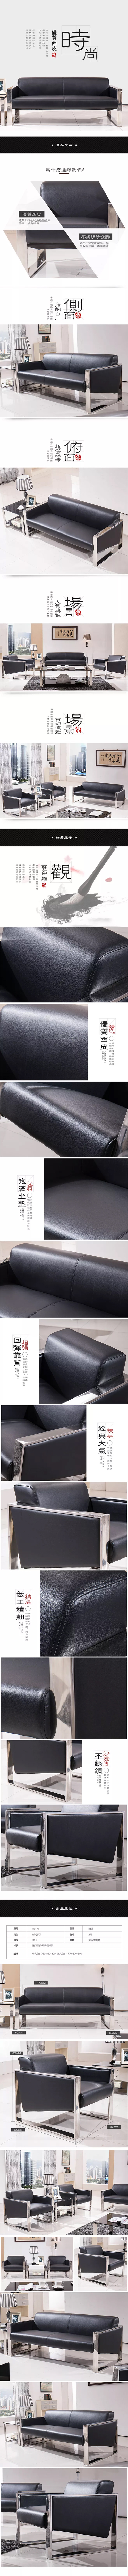 淘宝美工浮生平家具家纺 极有家沙发垫简约现中国风真皮沙发作品